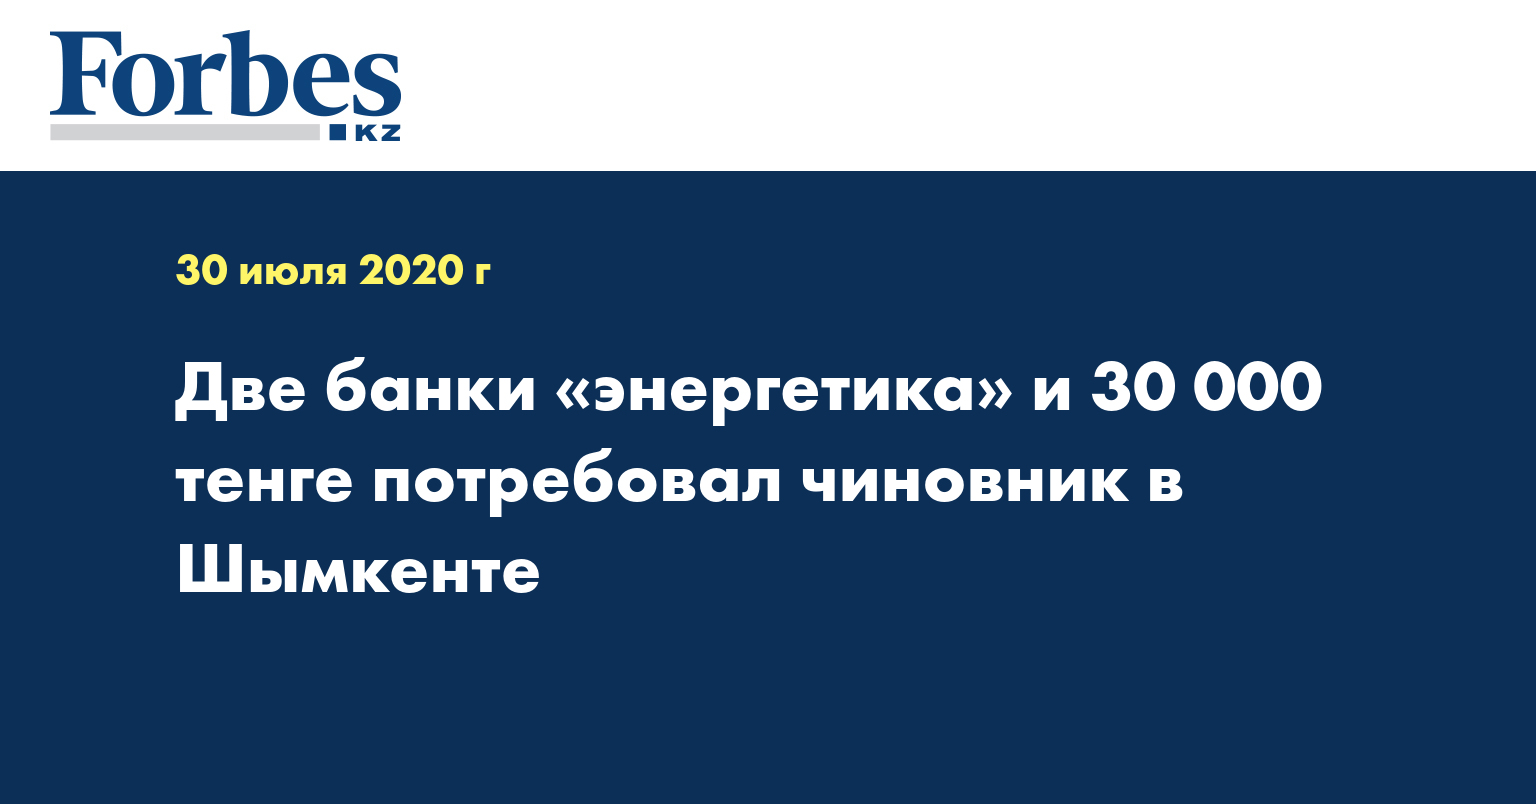  Две банки «энергетика» и 30 000 тенге потребовал чиновник в Шымкенте